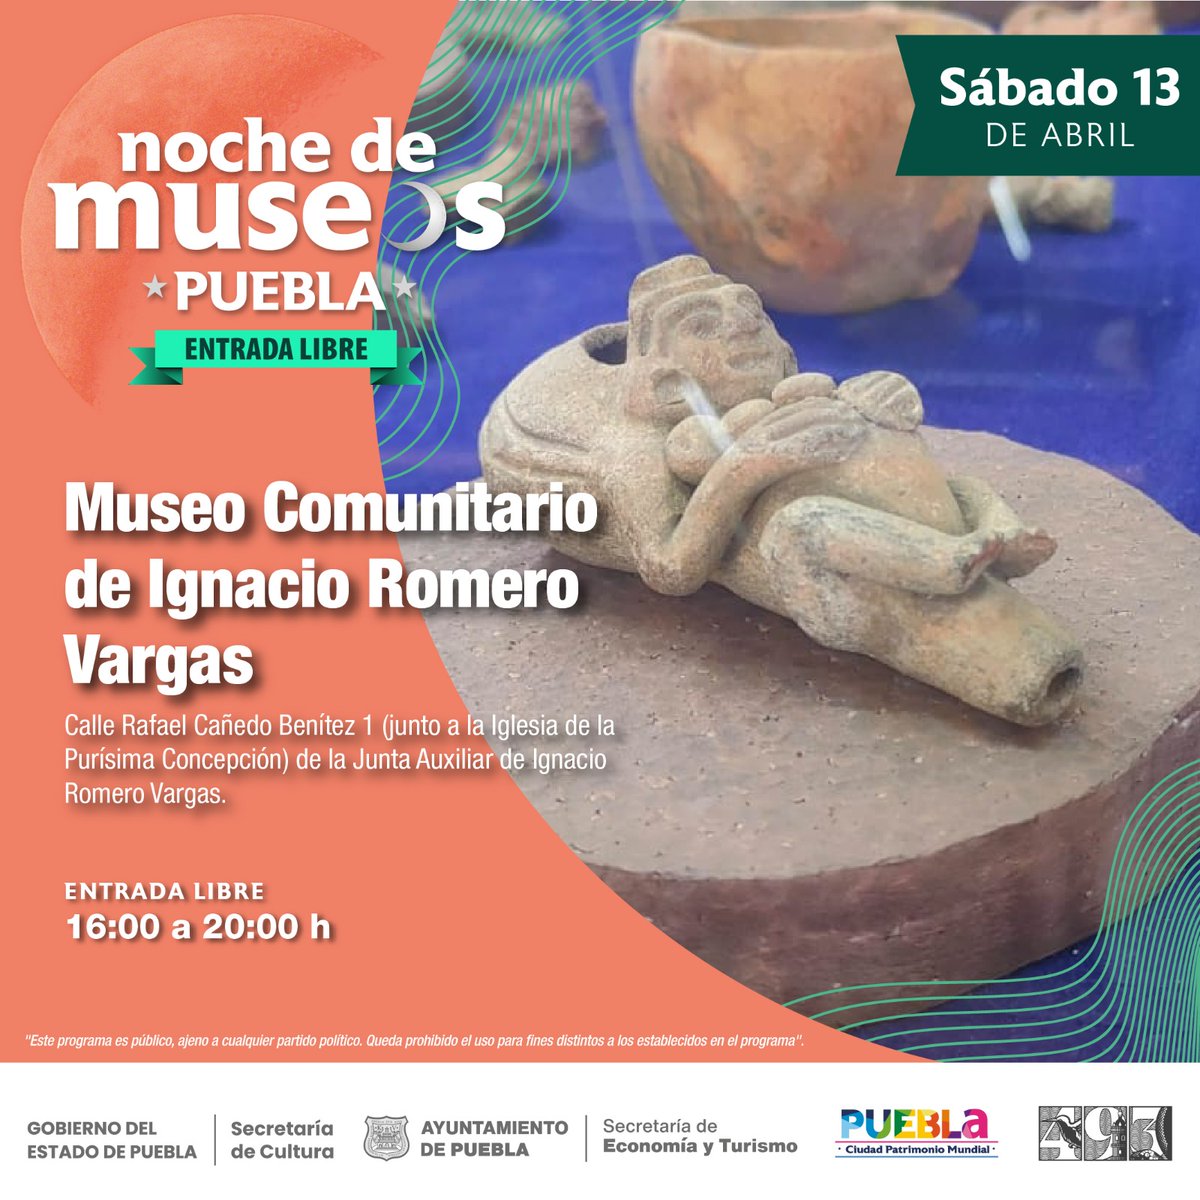 Noche_de_Museos tweet picture